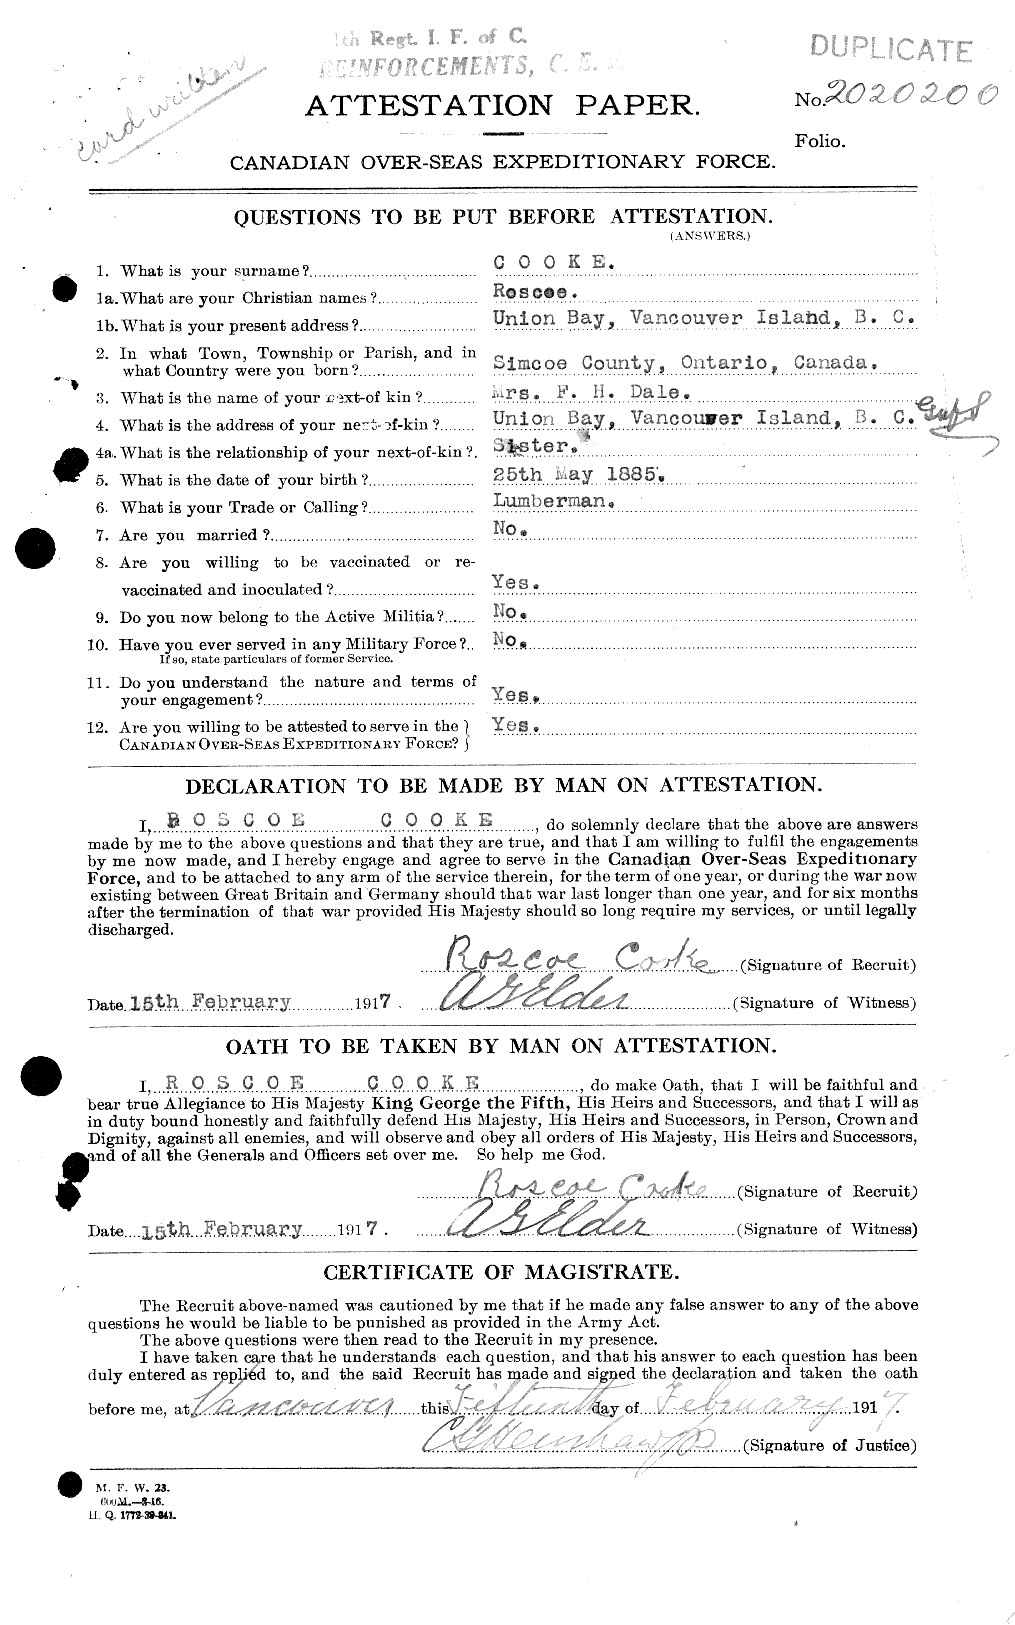 Dossiers du Personnel de la Première Guerre mondiale - CEC 048954a